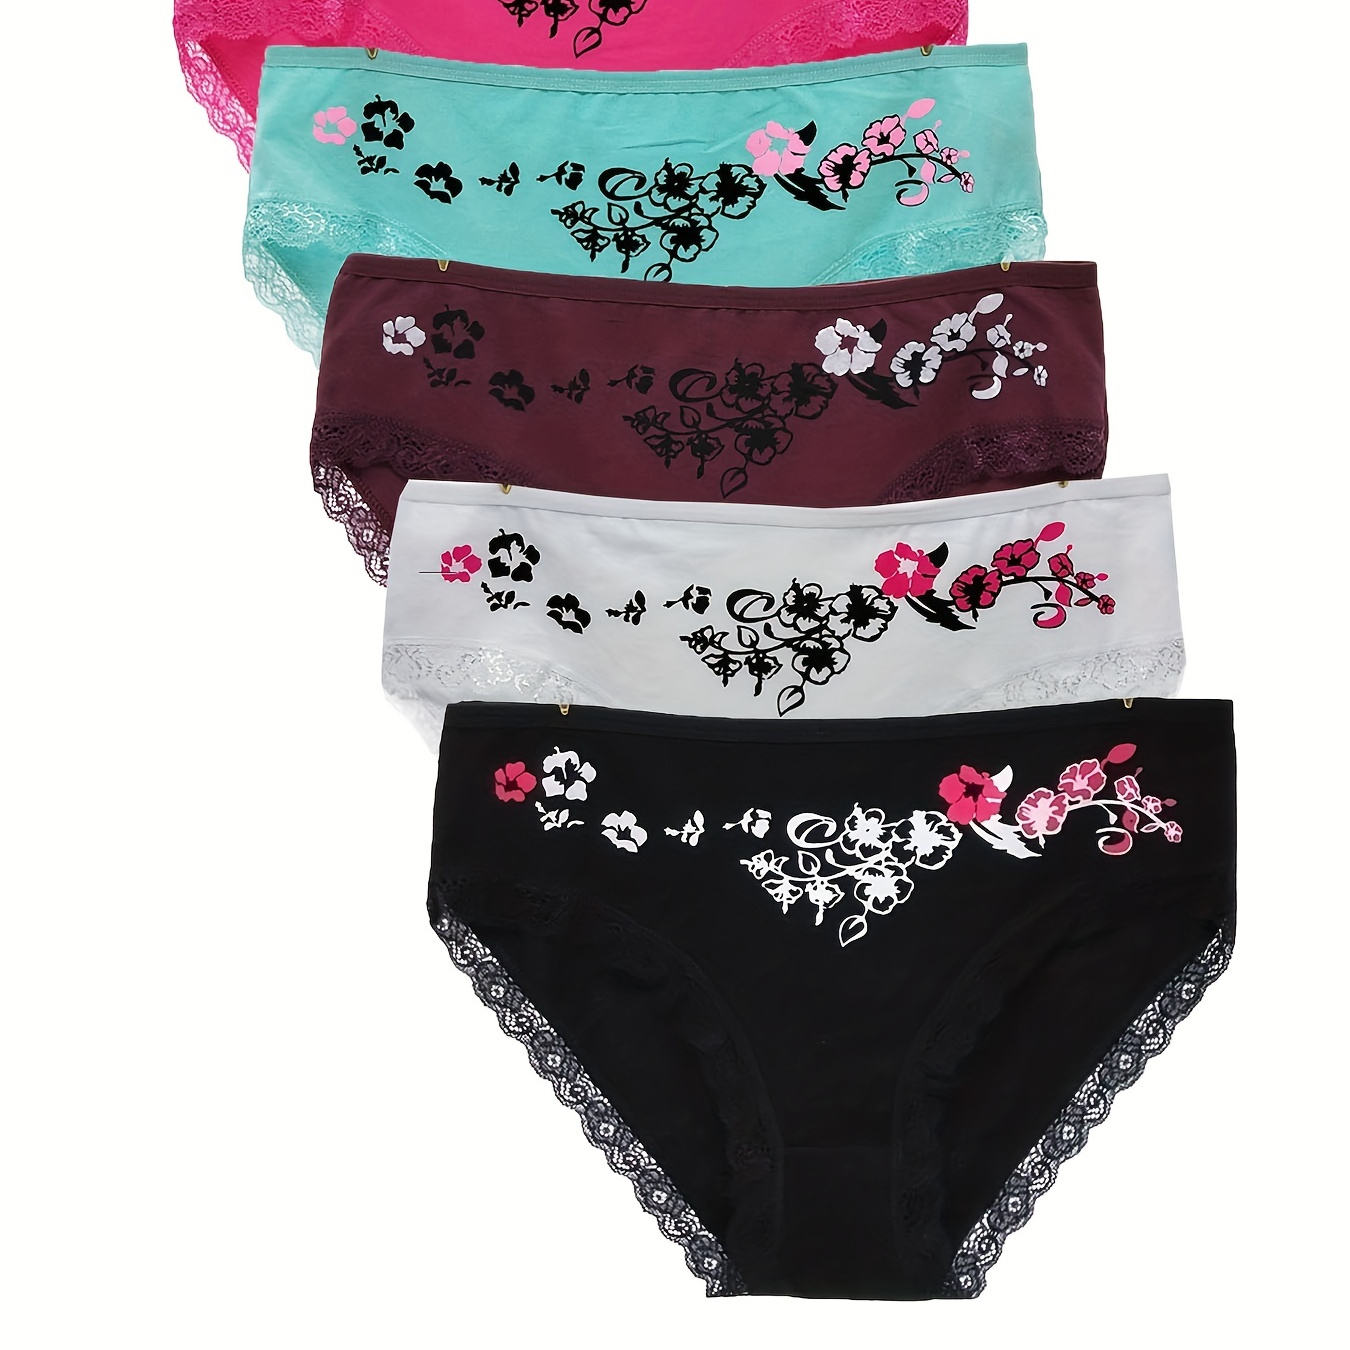 

6pcs Floral Print Briefs, Comfy & Breathable Lace Trim Intimates Panties, Women's Lingerie & Underwear